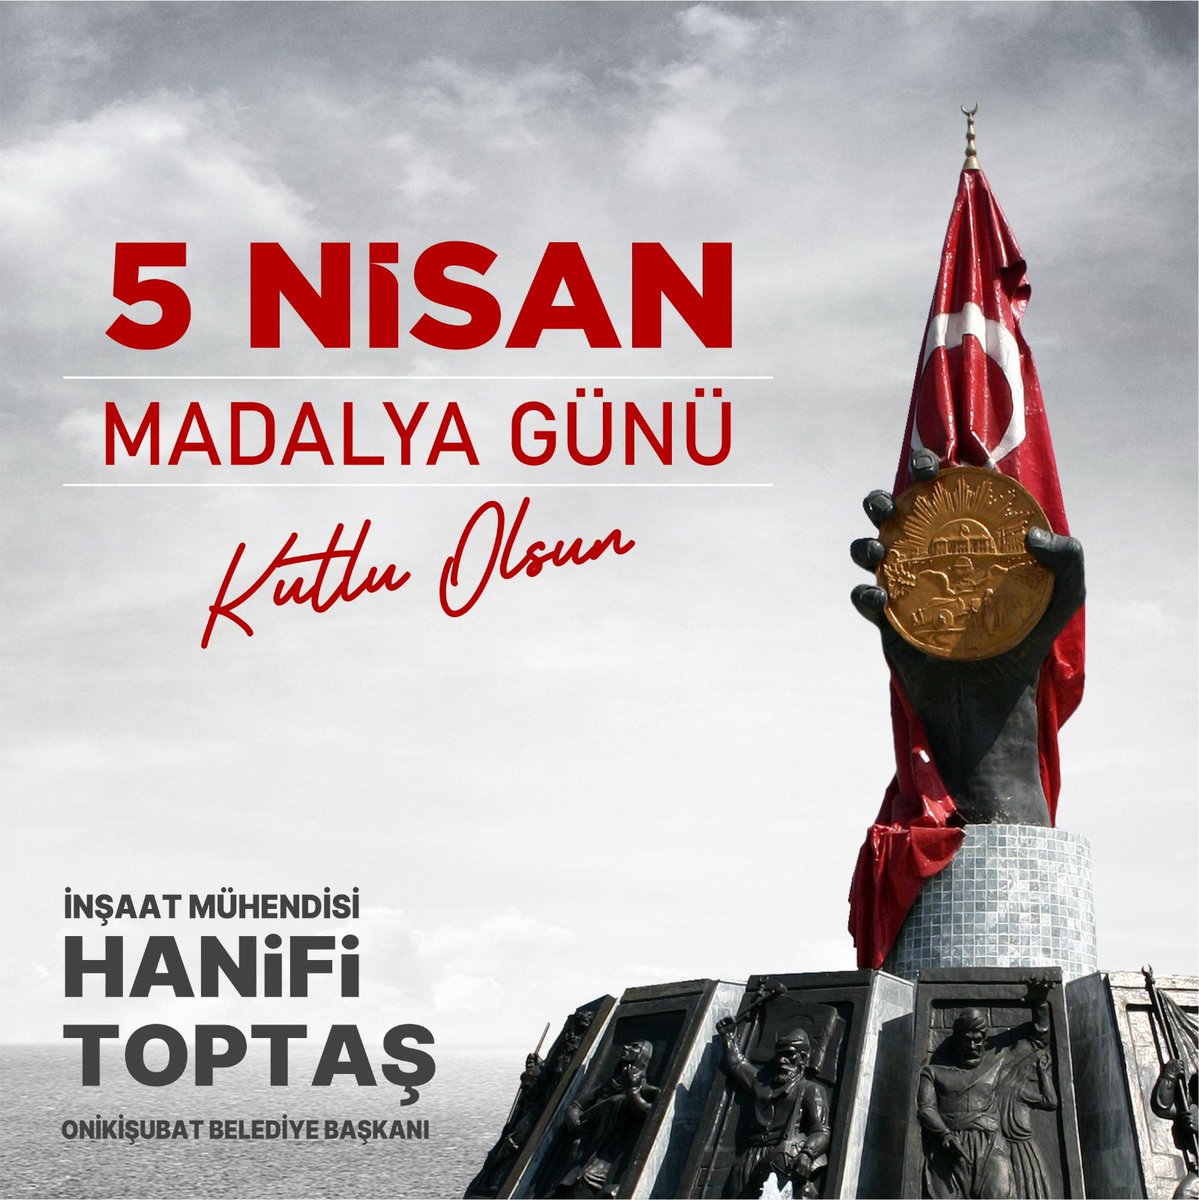 Kahramanmaraş'ımıza 'İstiklal Madalyası' verilişinin 99. yıl dönümünü kutlu olsun. 🇹🇷 Bağımsızlık mücadelesinin destanını yazan aziz ecdadımızı rahmet ve minnetle anıyorum.